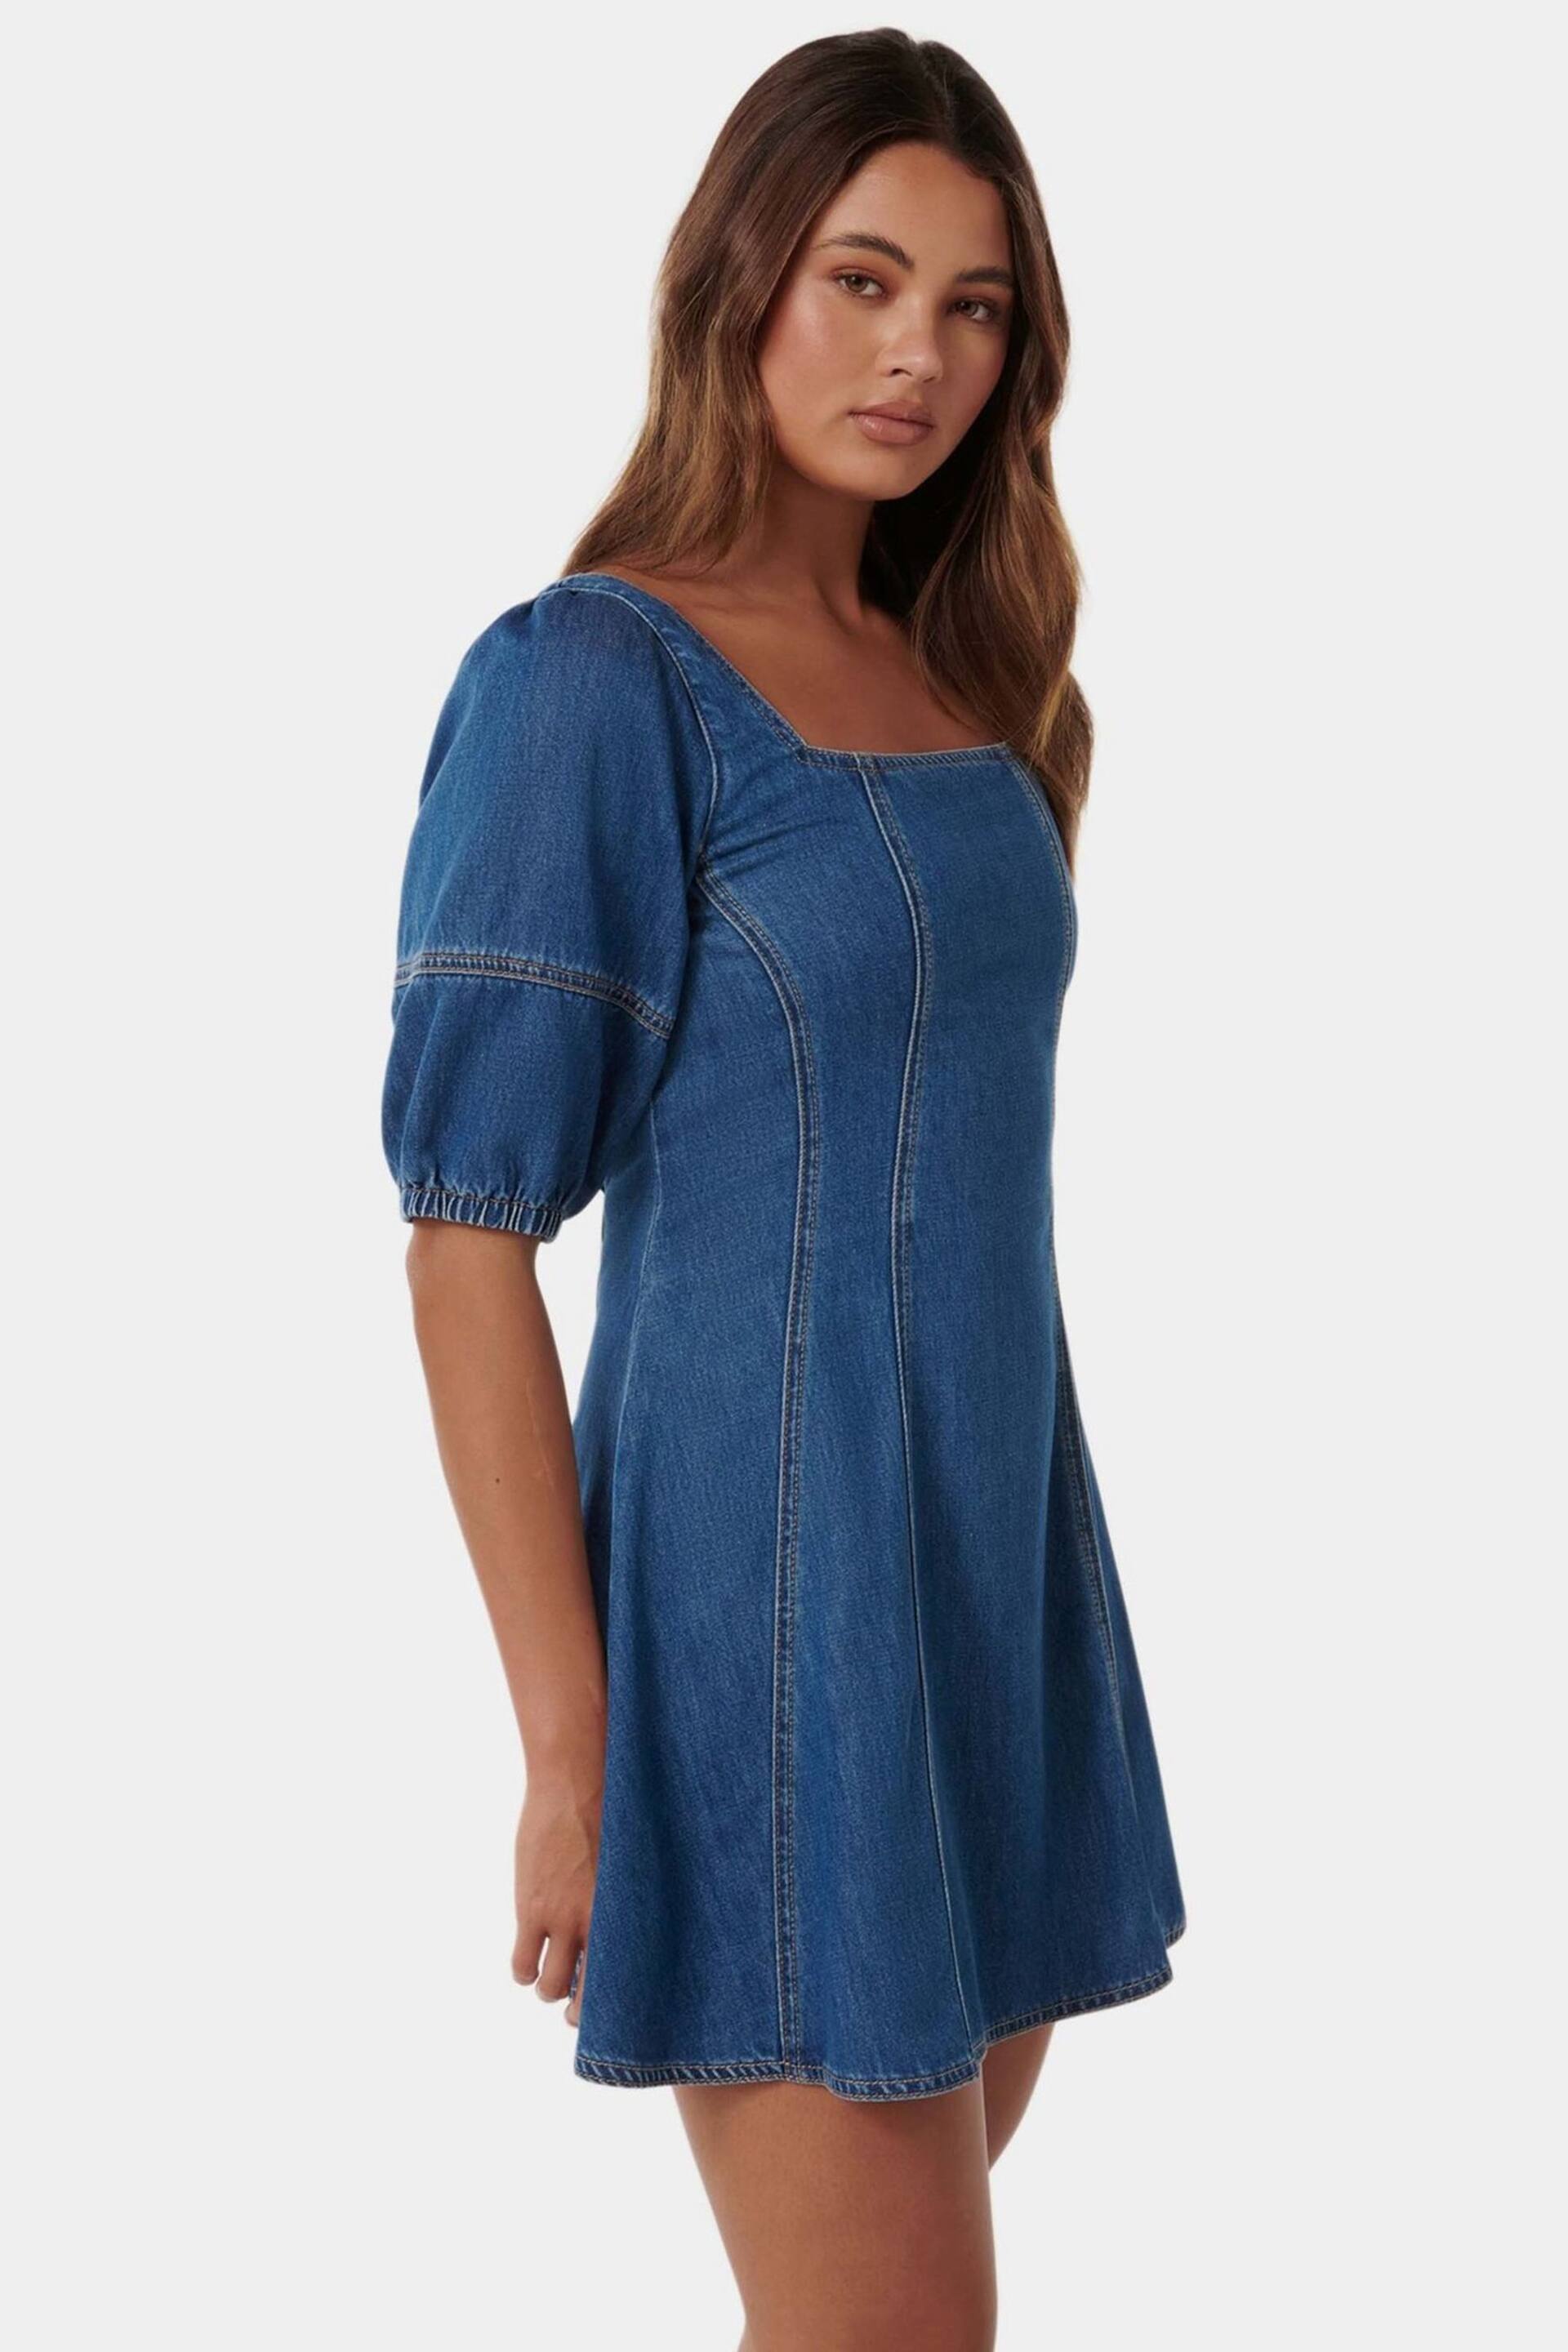 Forever New Blue Sierra Denim Dress - Image 3 of 5